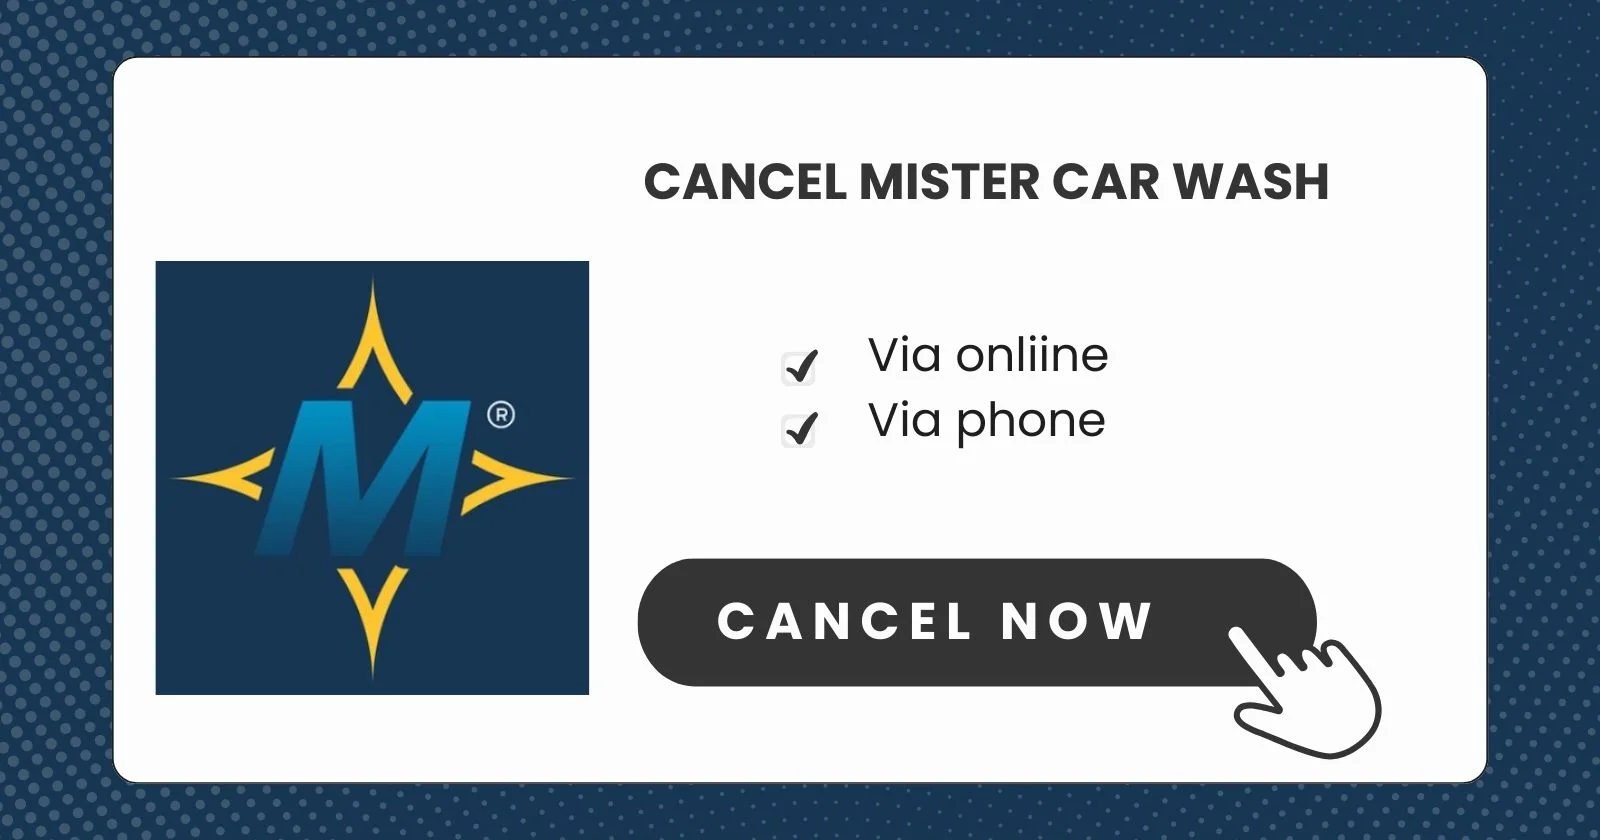 Cancel Mister Car Wash